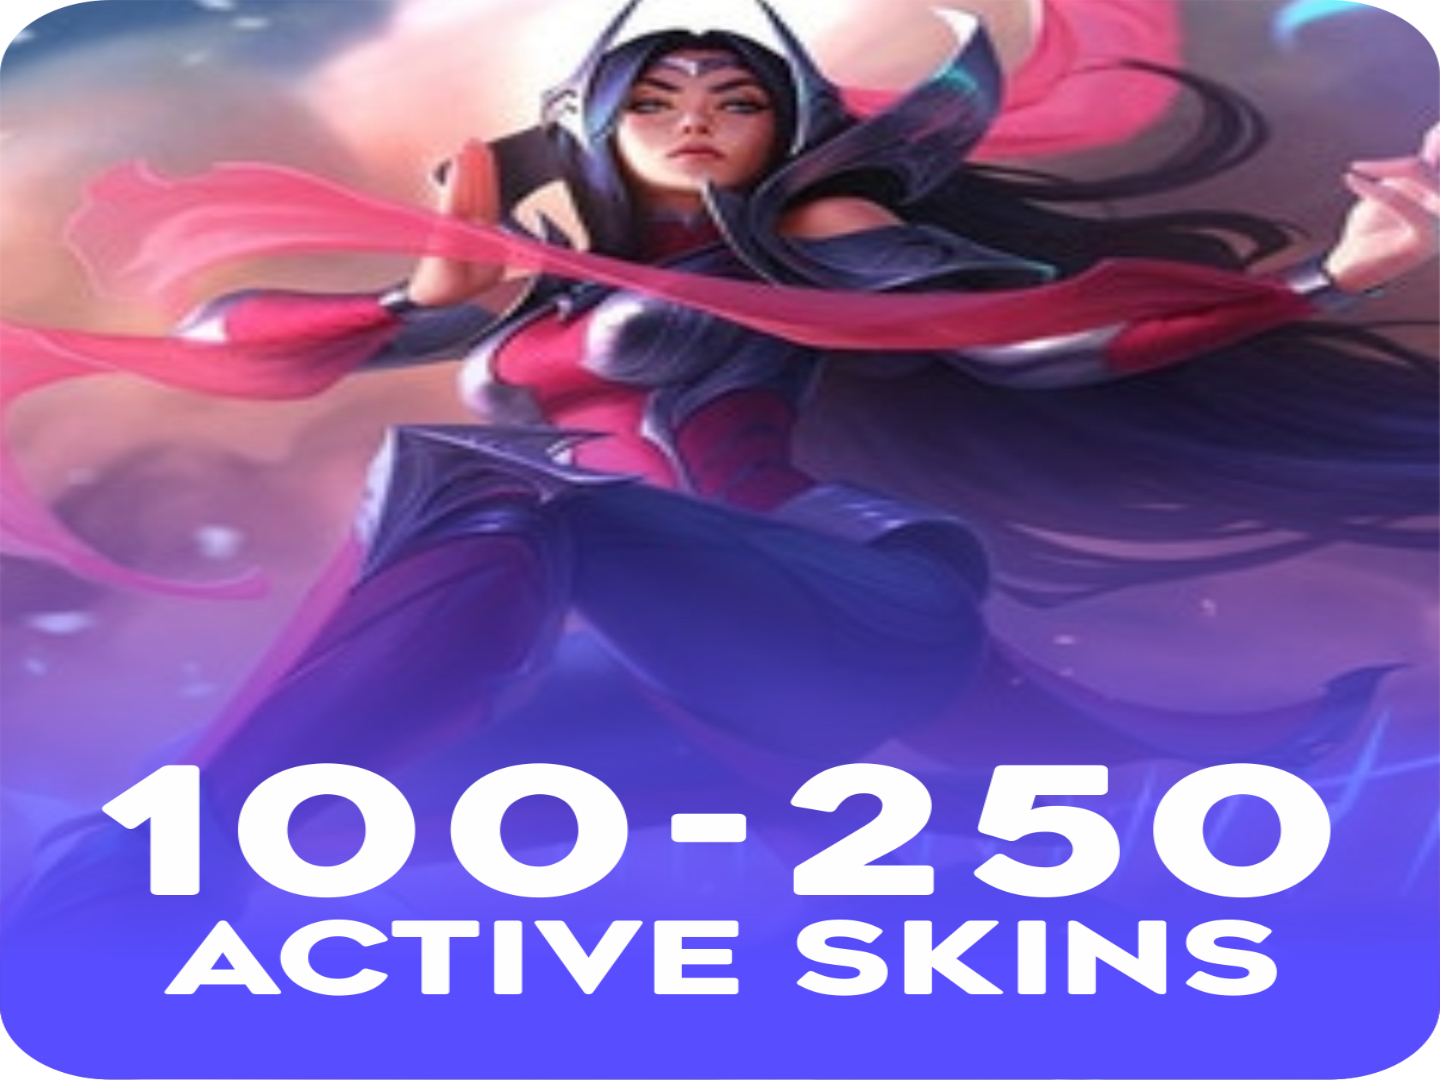 Active 100-250 skins Account